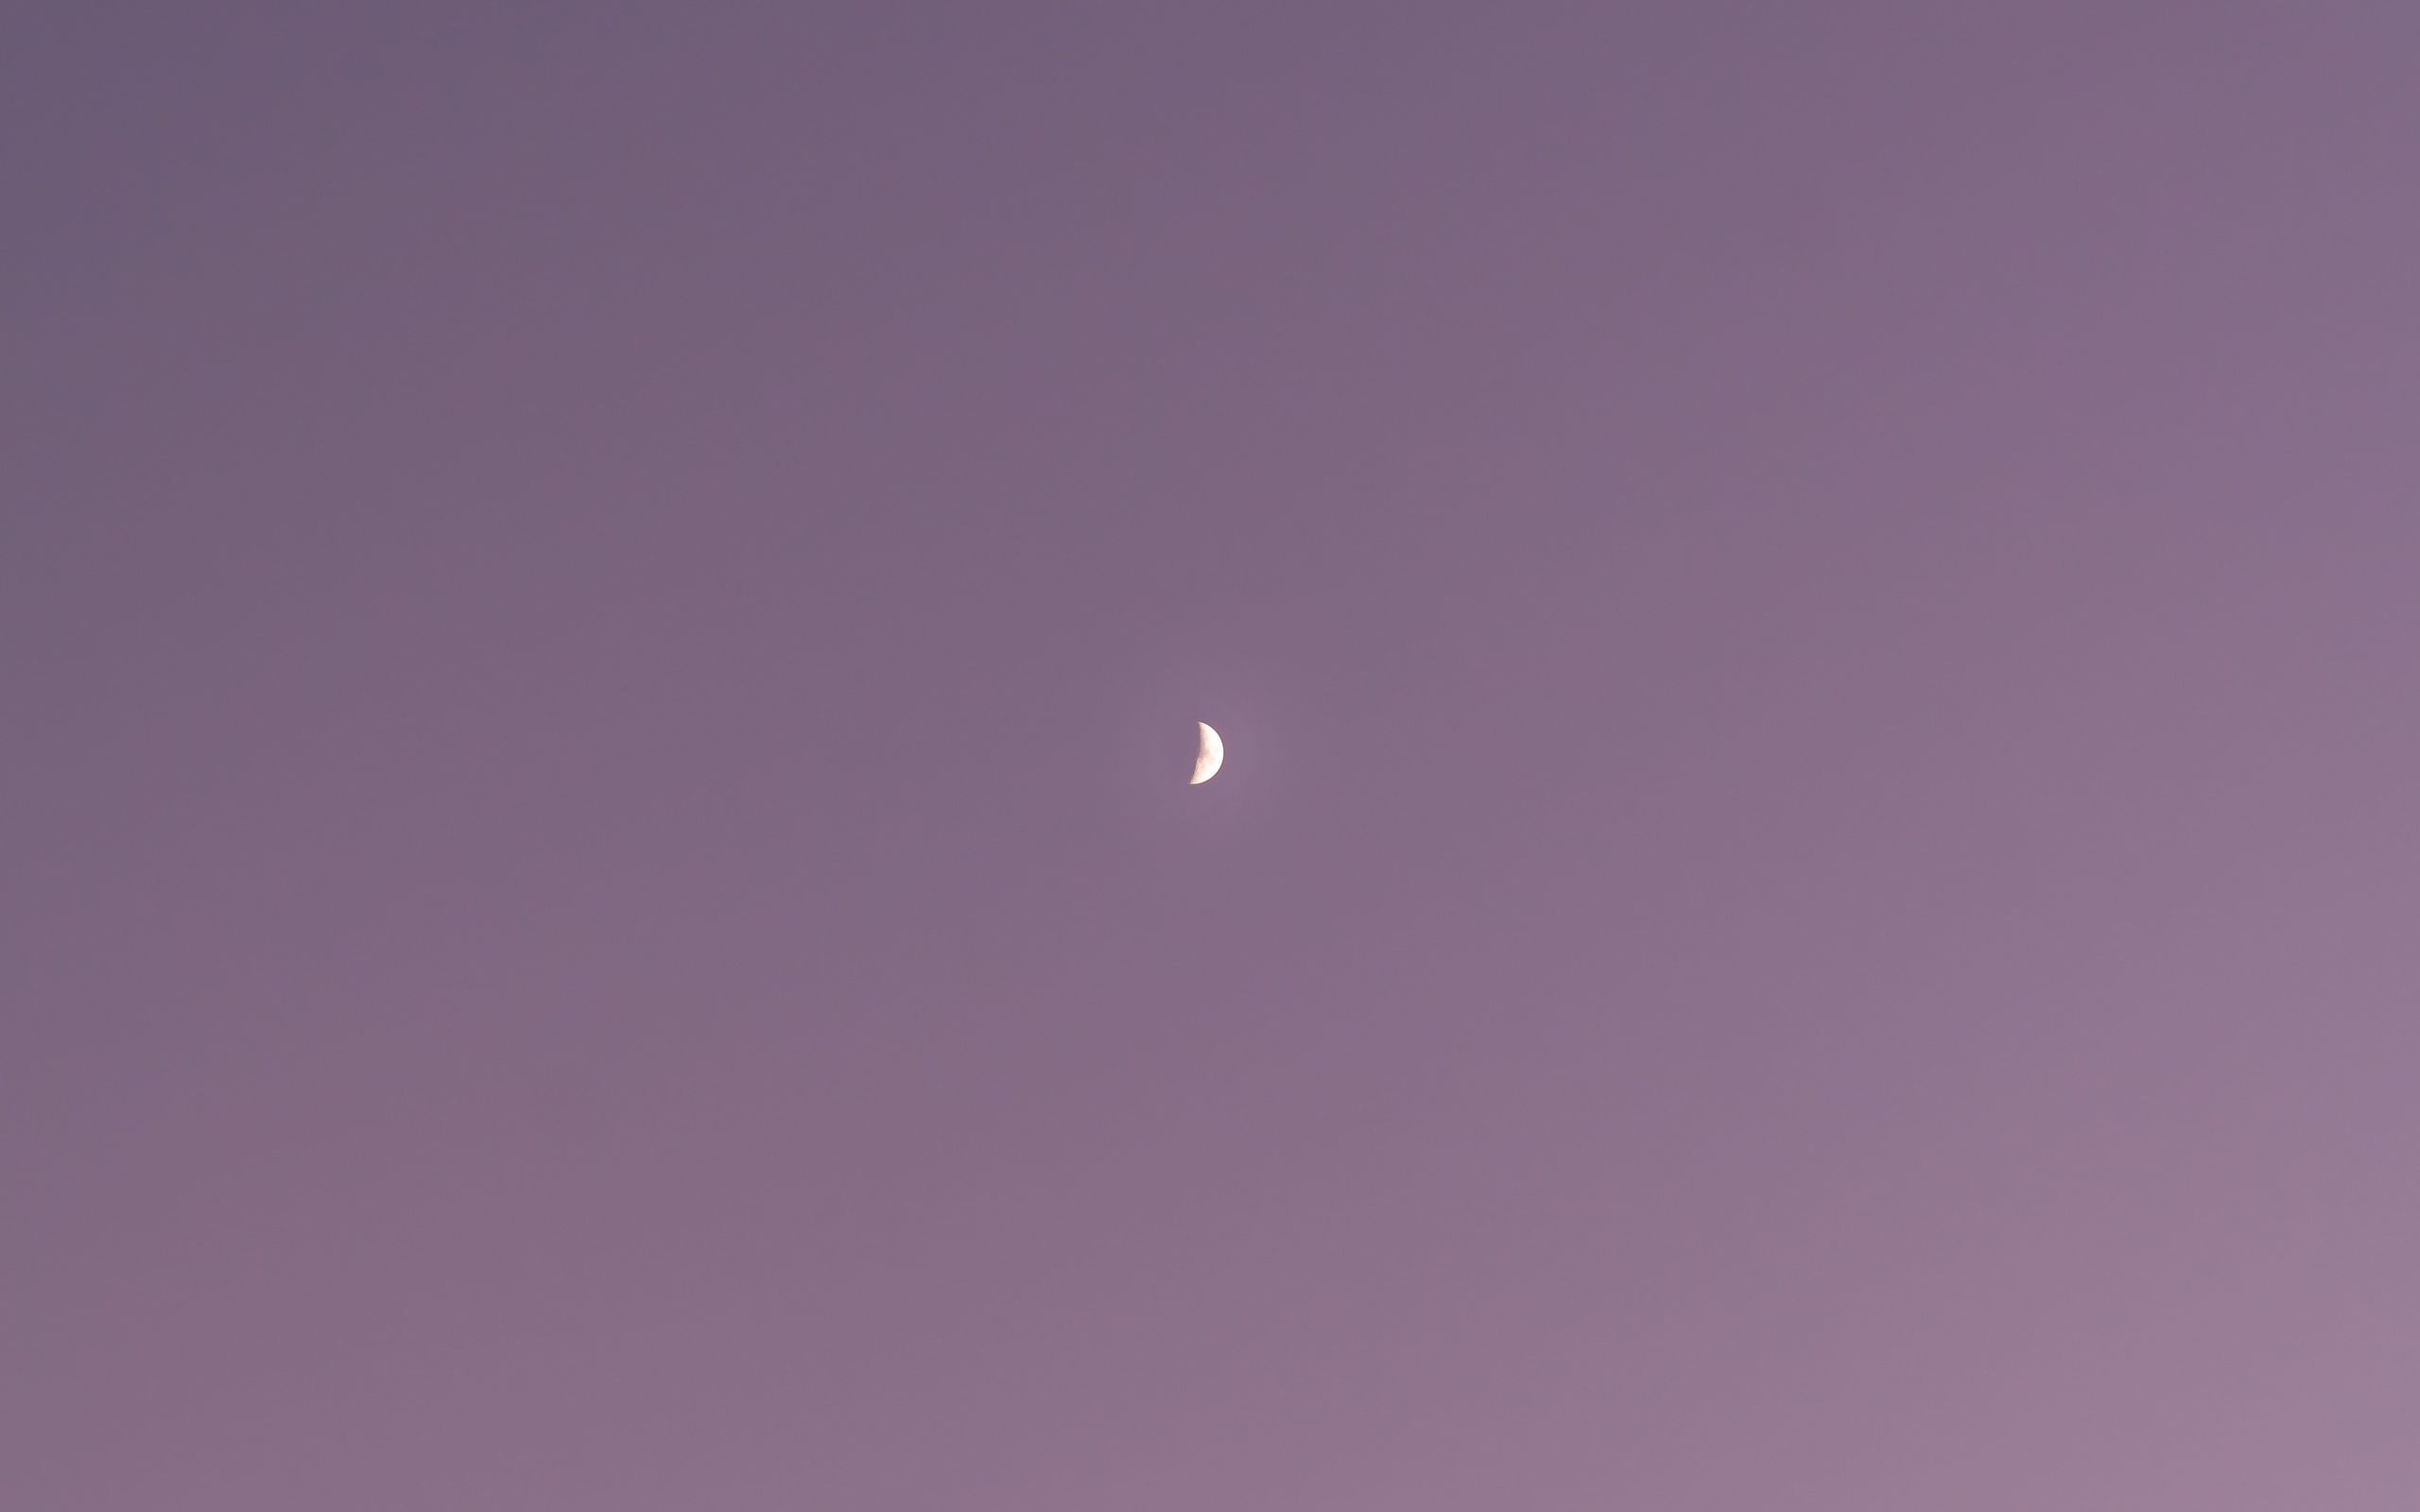 Với hình nền tối giản mặt trăng, bầu trời tím, hình ảnh chìm đắm trong sự yên tĩnh và trầm lắng. Hình ảnh kết hợp của mặt trăng và bầu trời tím là điểm nhấn tuyệt vời cho hình nền của bạn.